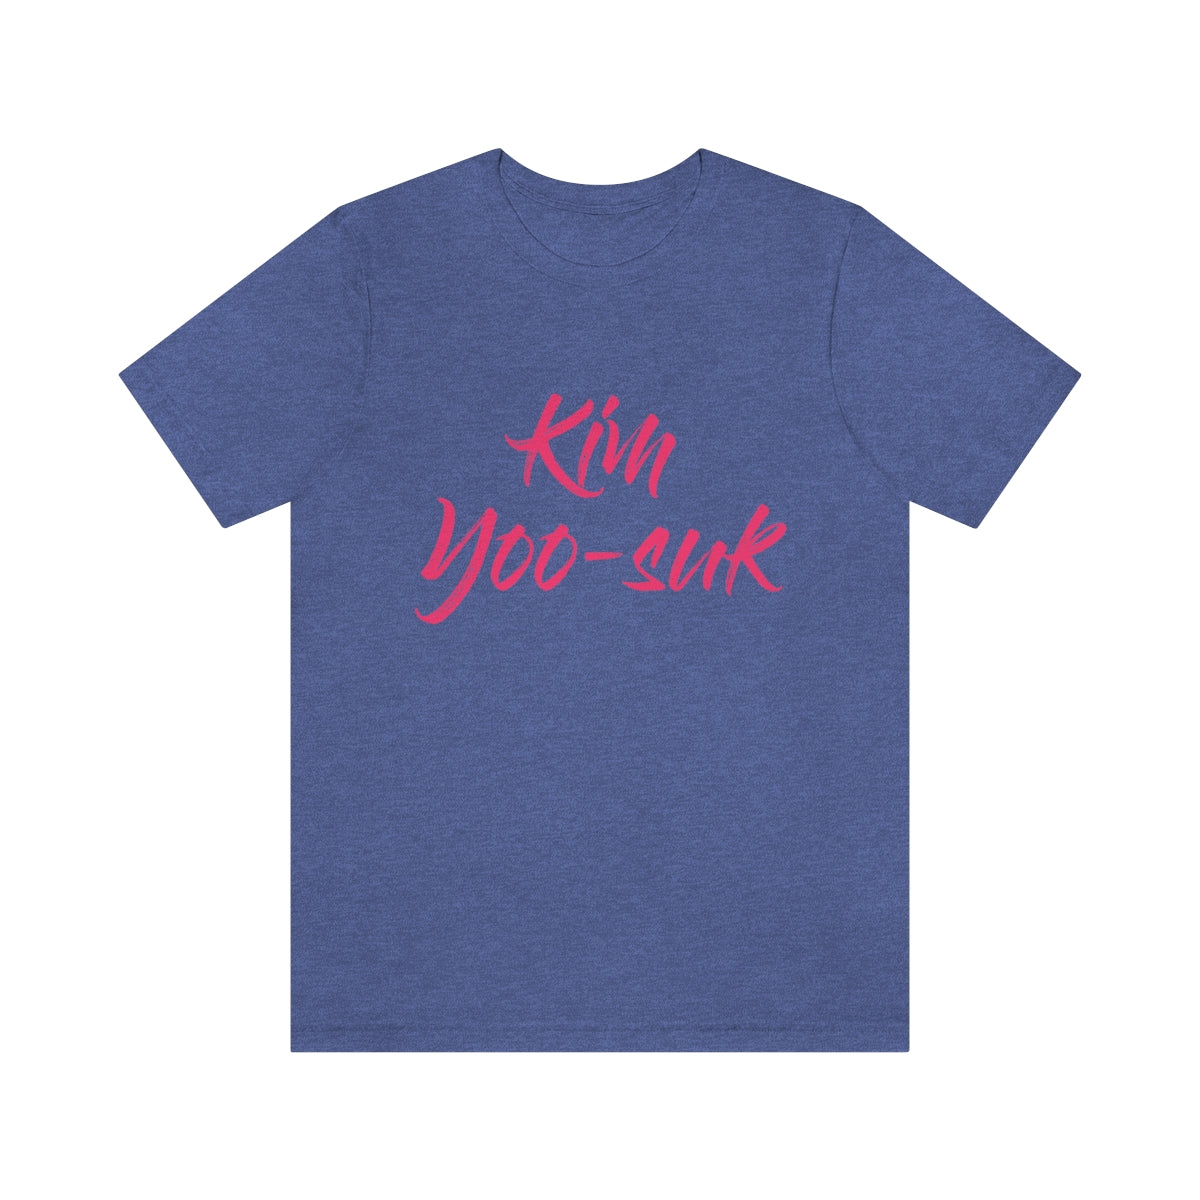 Kim Yoo-suk T-Shirt